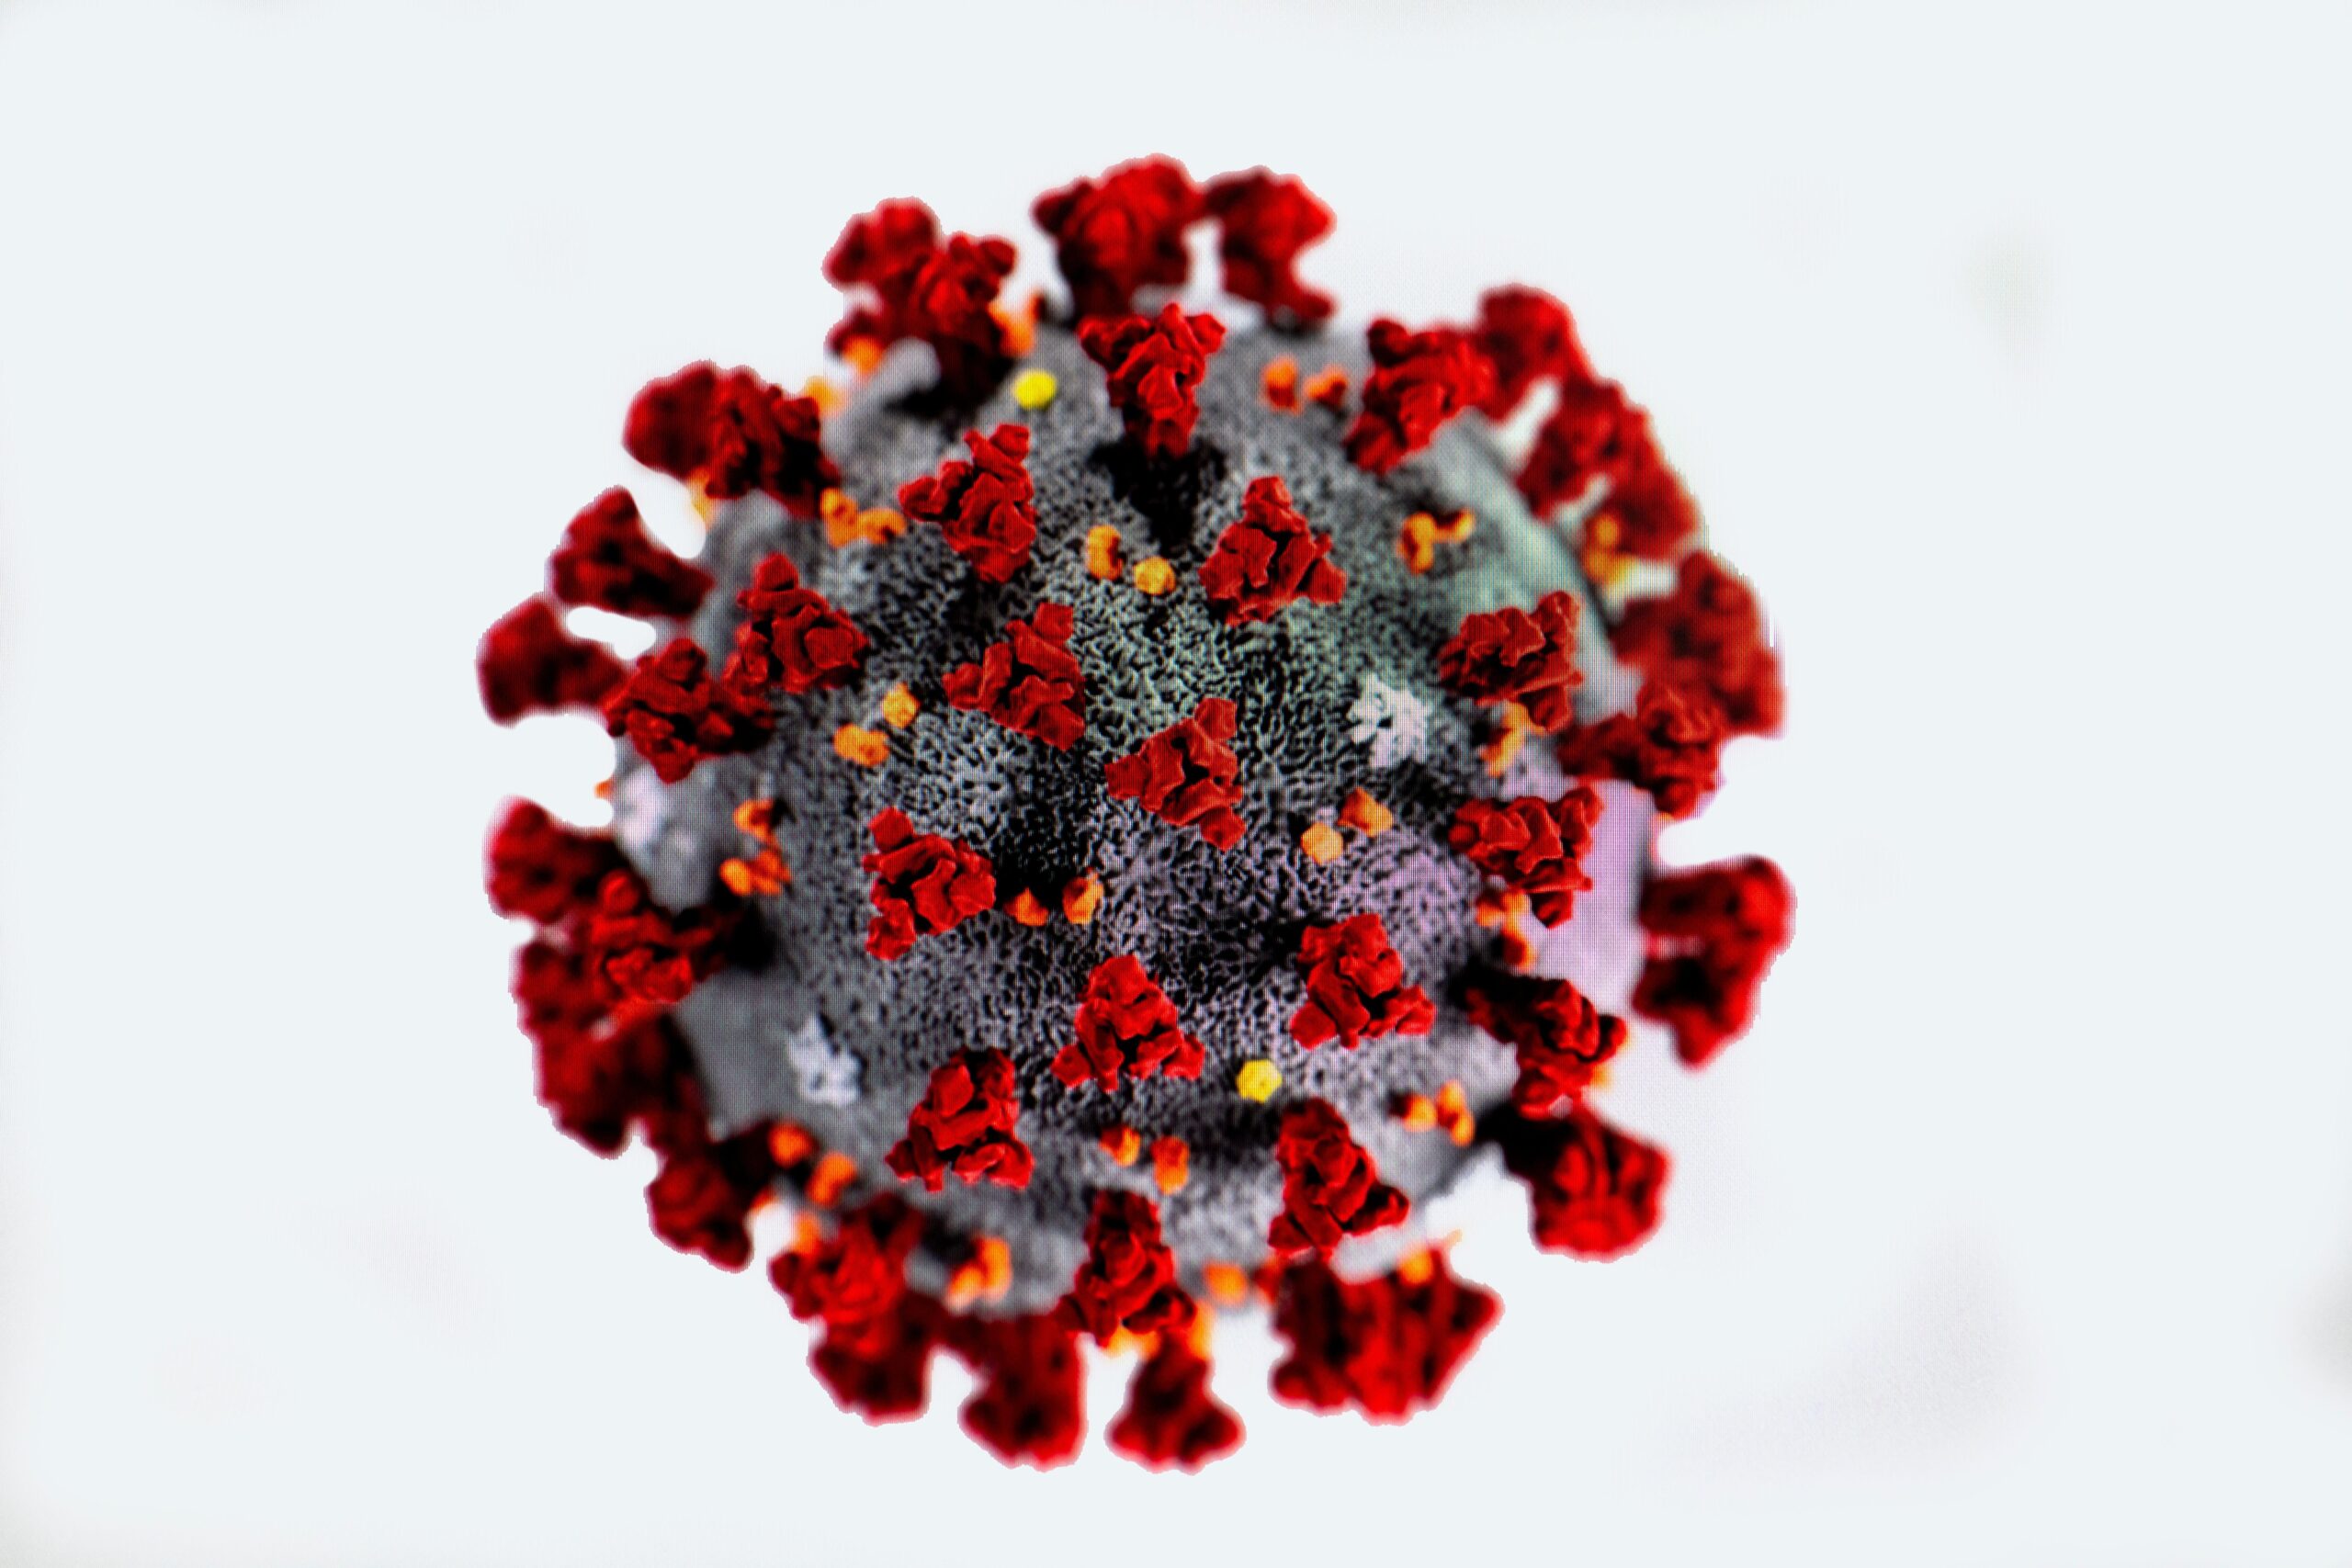 Image of Coronavirus COVID-19